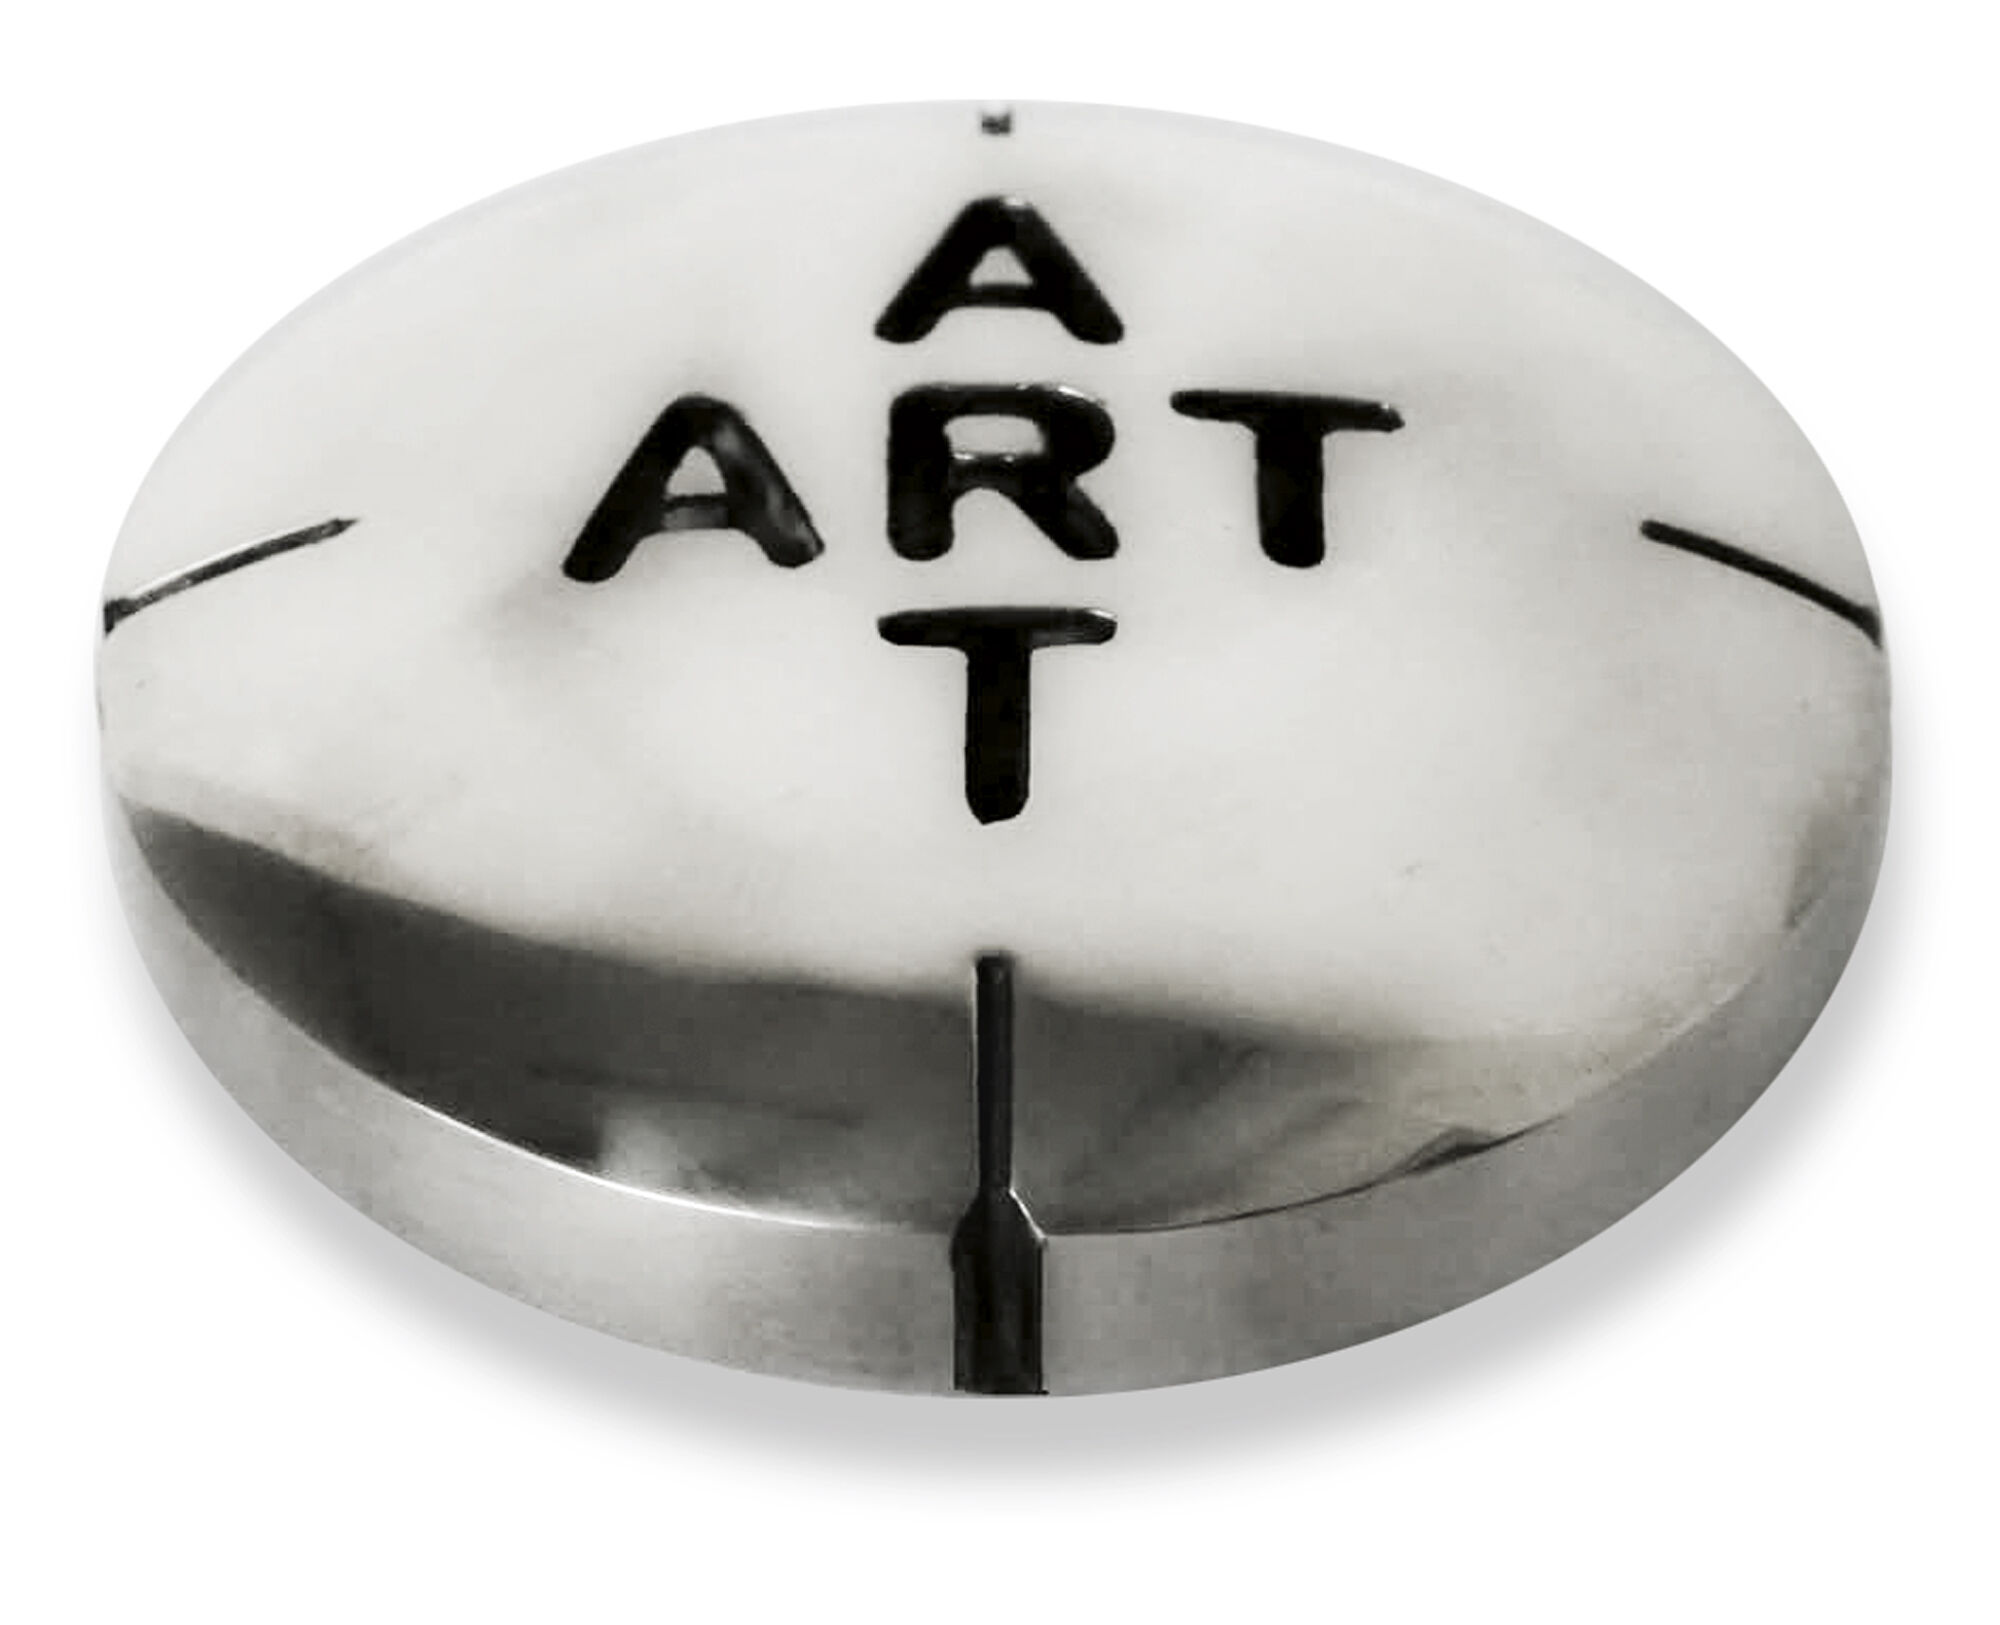 Sculpture "Pill for Art (Chrome)", bronze by Amos Plaut